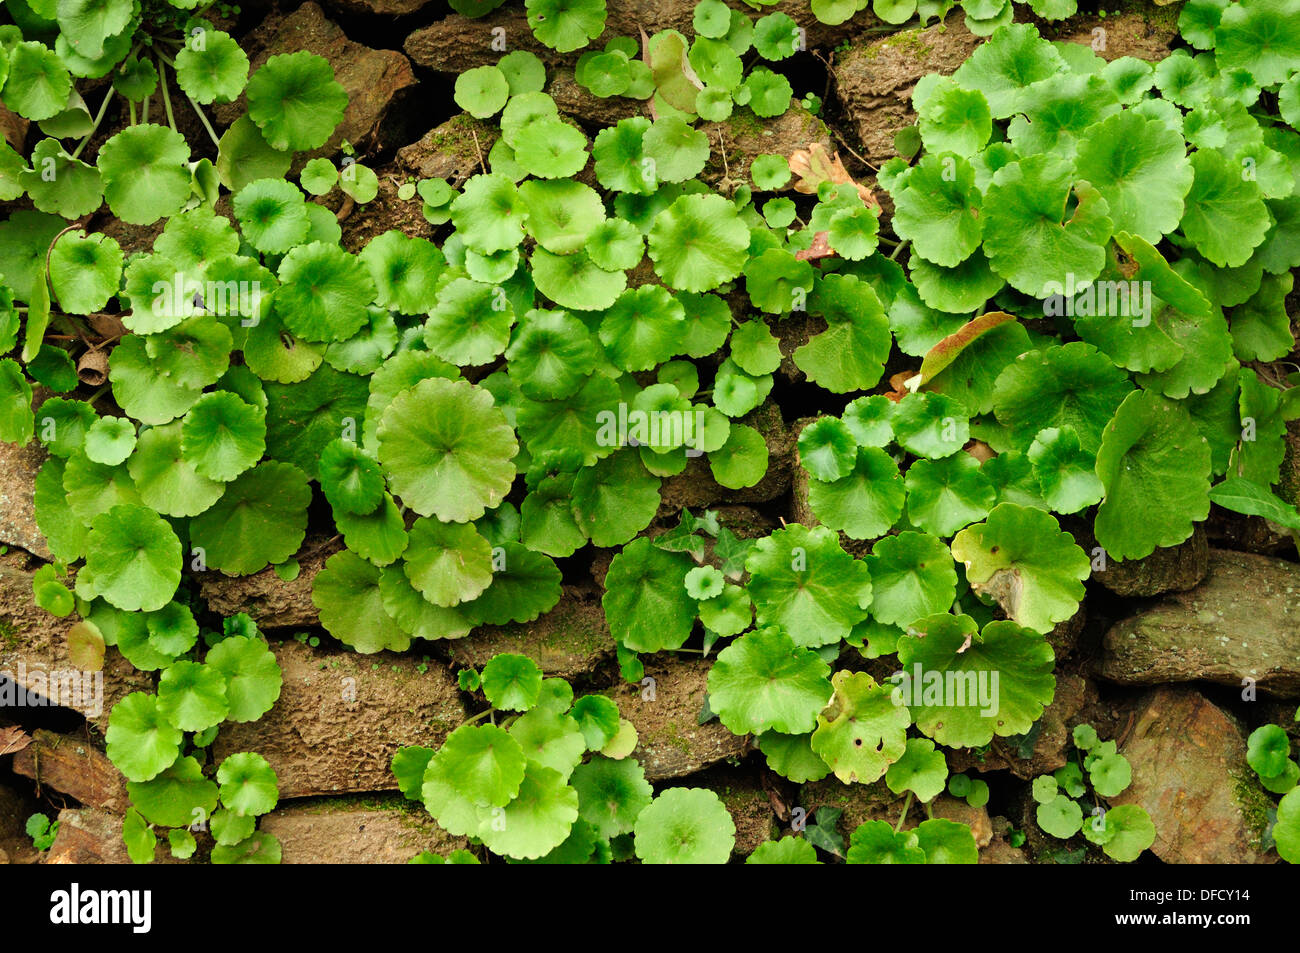 Pennywort (Umbilicus rupestris) Stock Photo